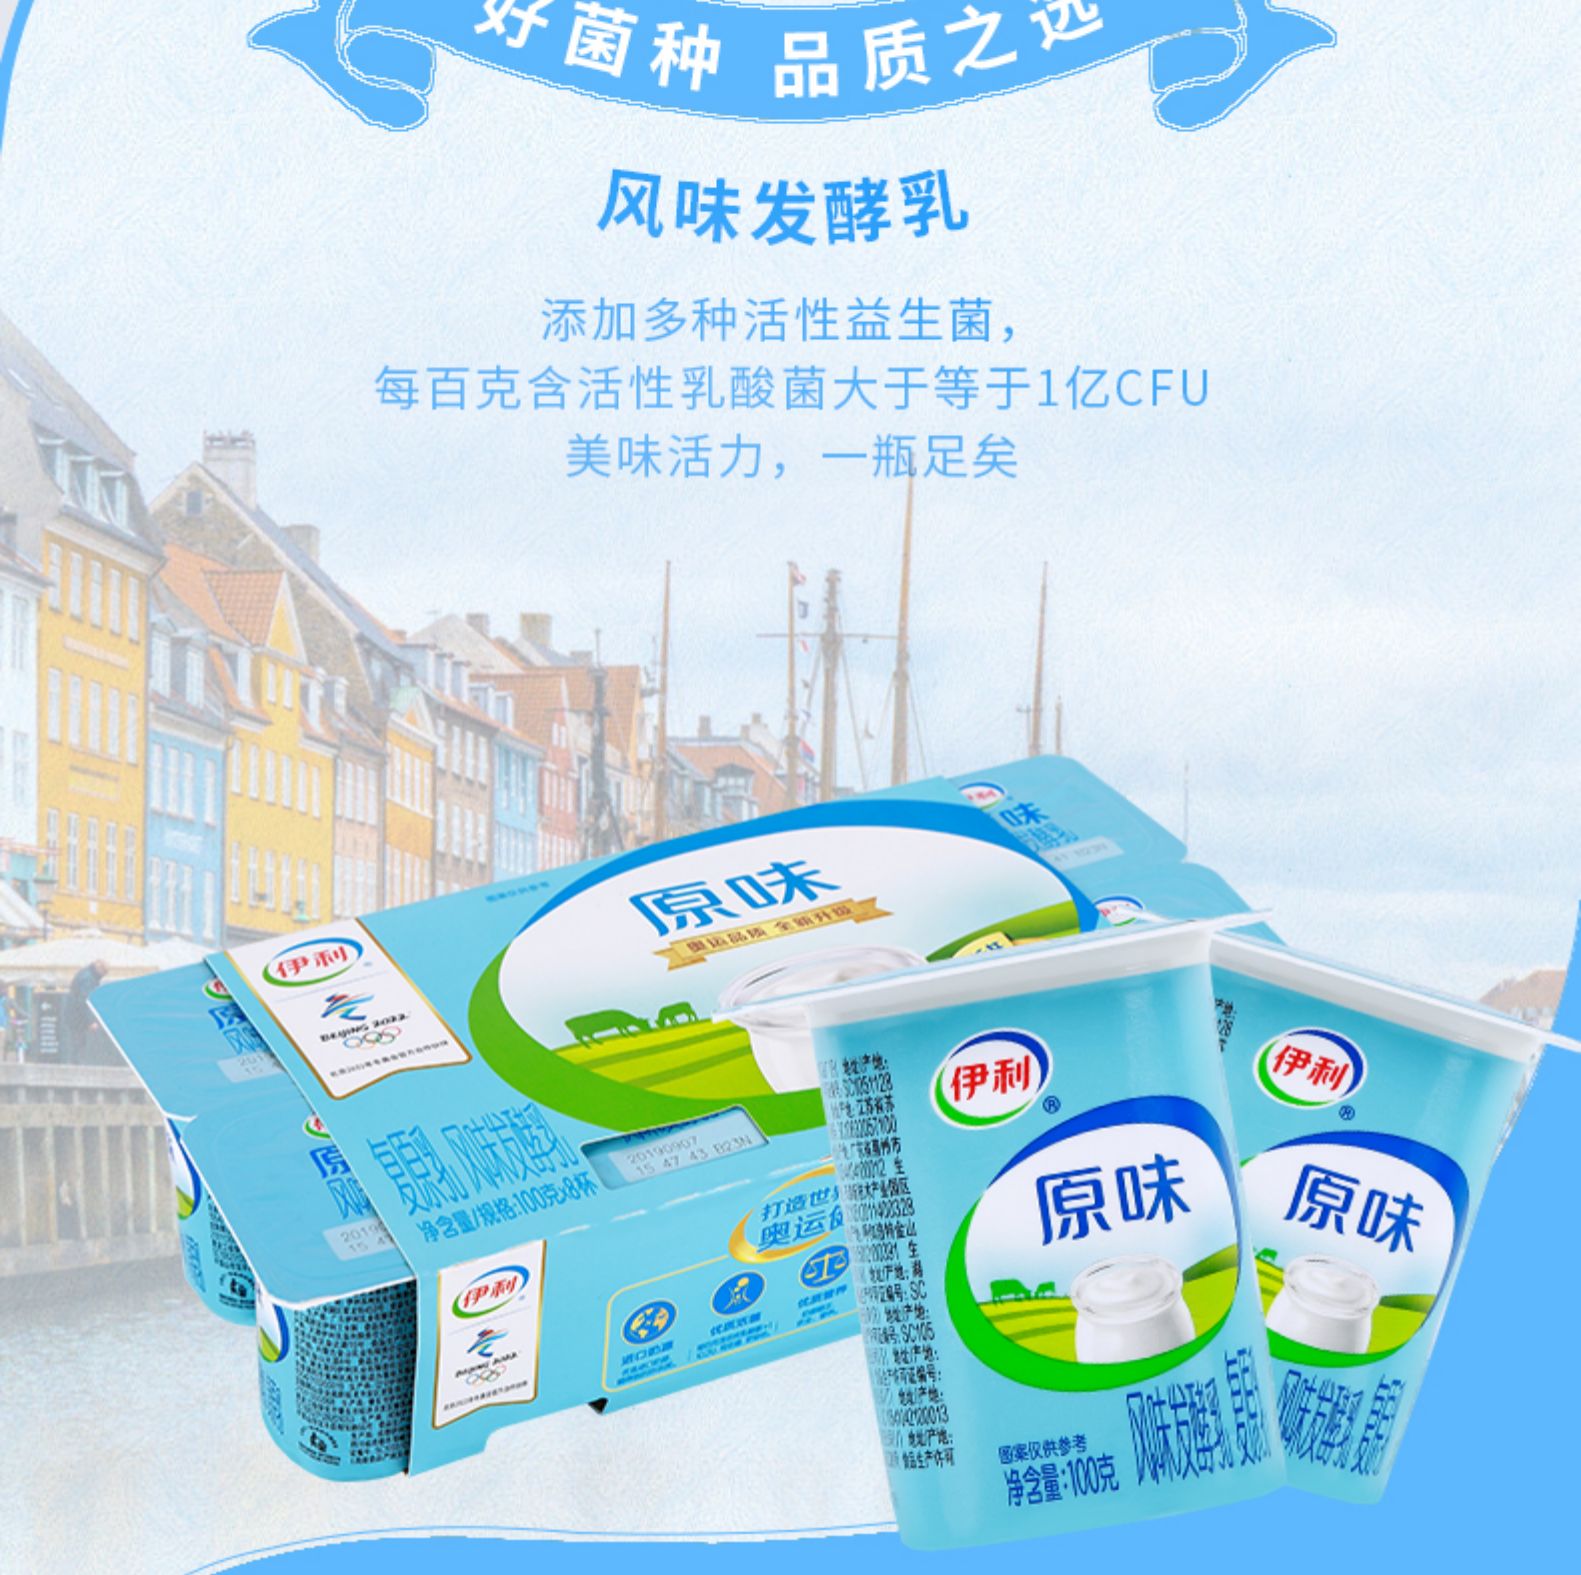 箱装产地:中国湖北武汉市国产/进口:国产类别:低温原味酸奶品牌:伊利